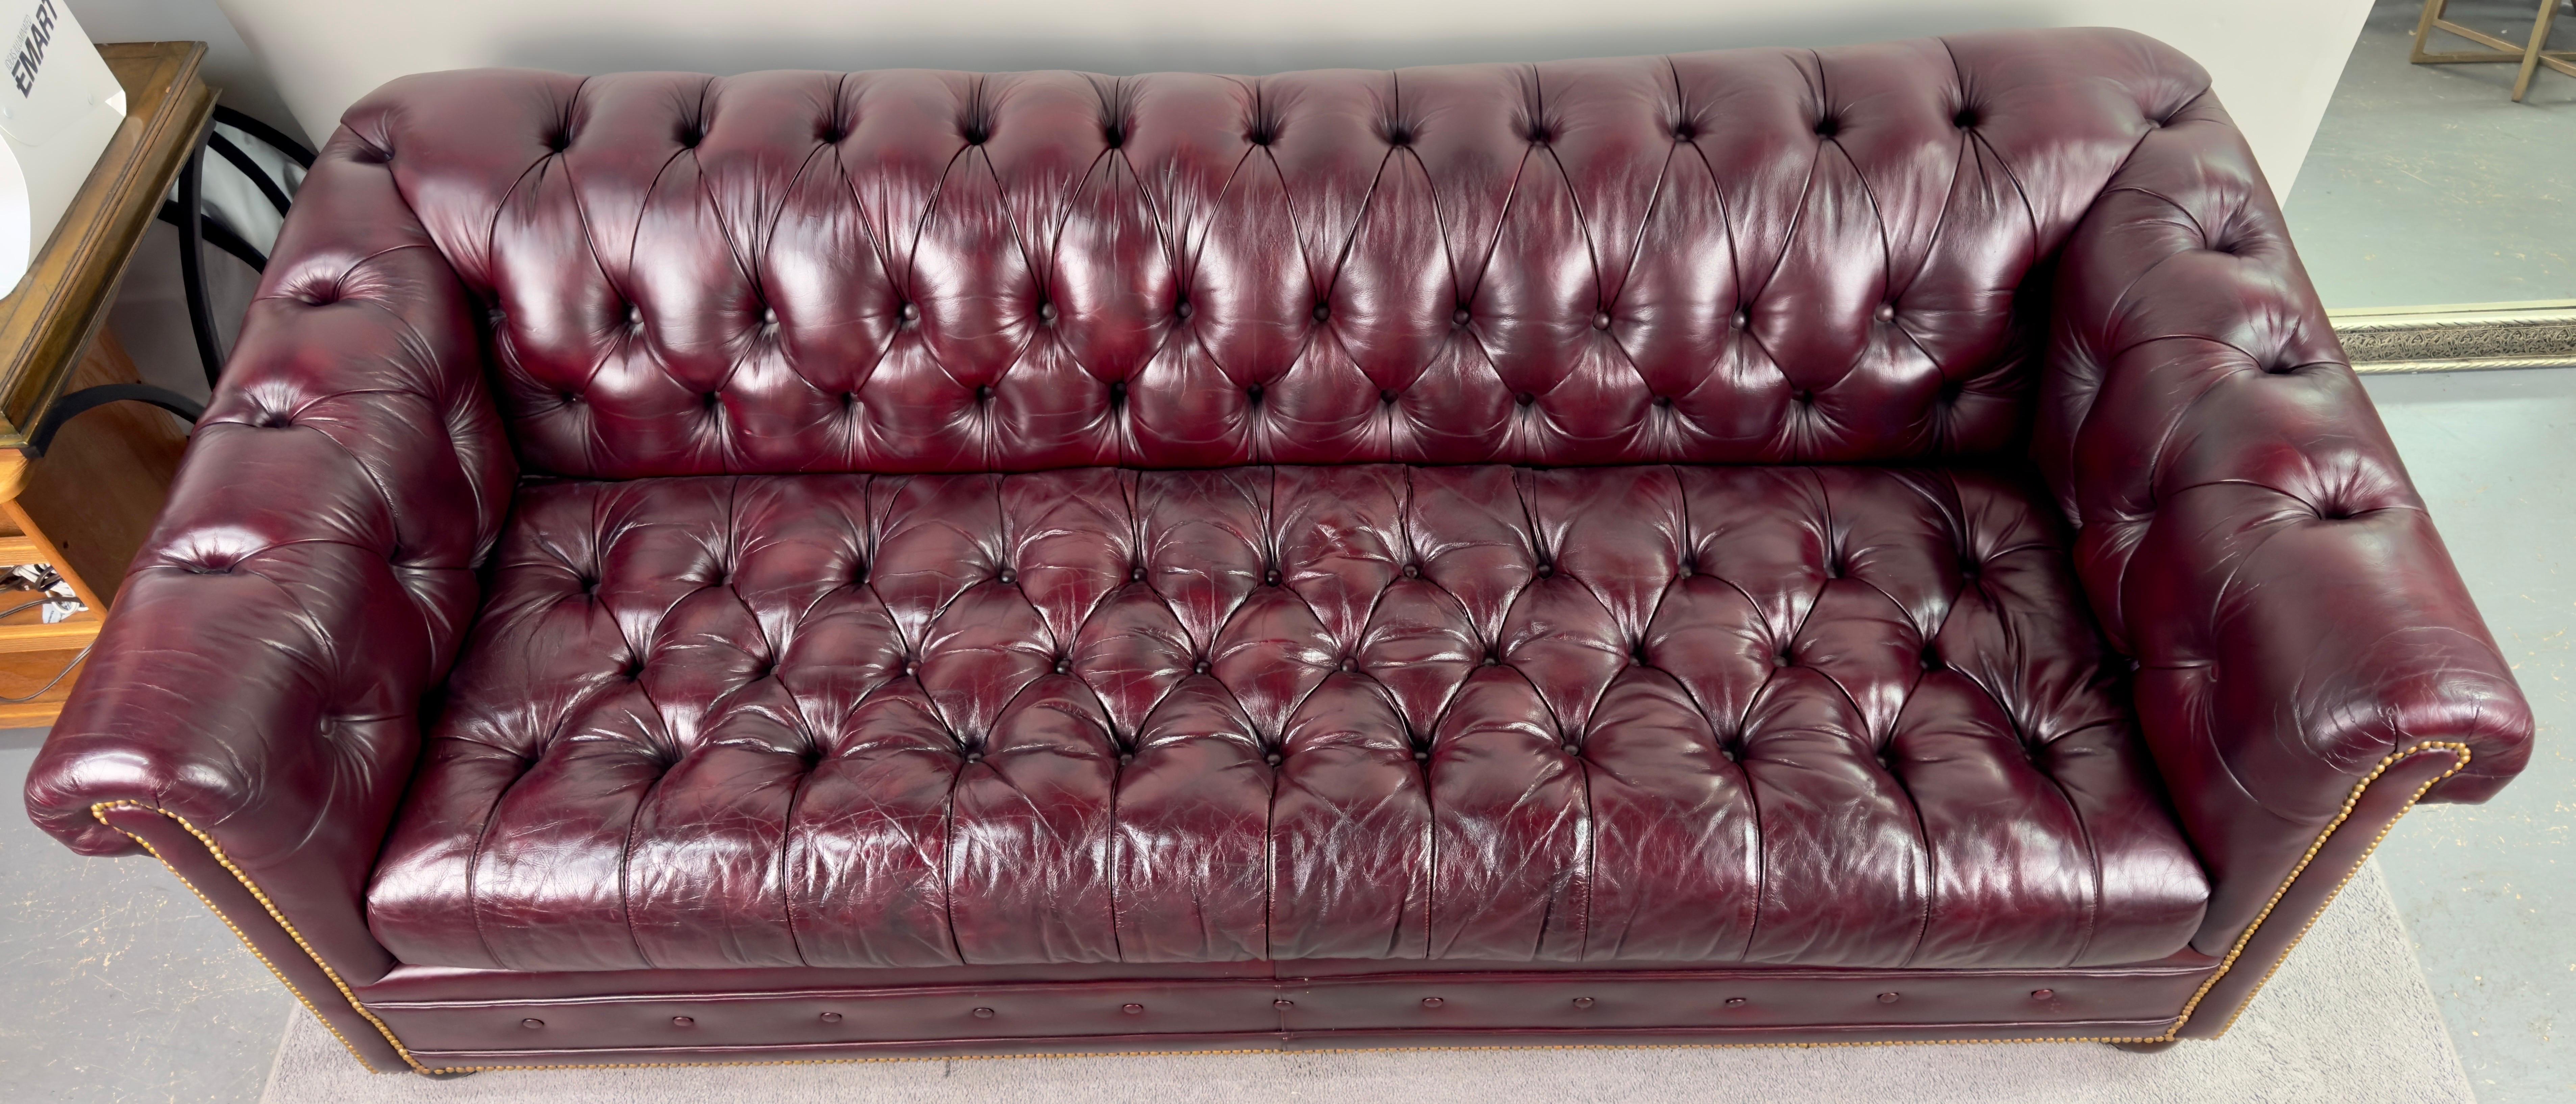 Un sofá de piel estilo Chesterfield inglés de Hancock & Moore, procedente del renombrado taller de Hickory, Carolina del Norte. Este opulento sofá destila elegancia con su rico tono arándano Williamsburg, que recuerda al lujo tradicional.

Adornado